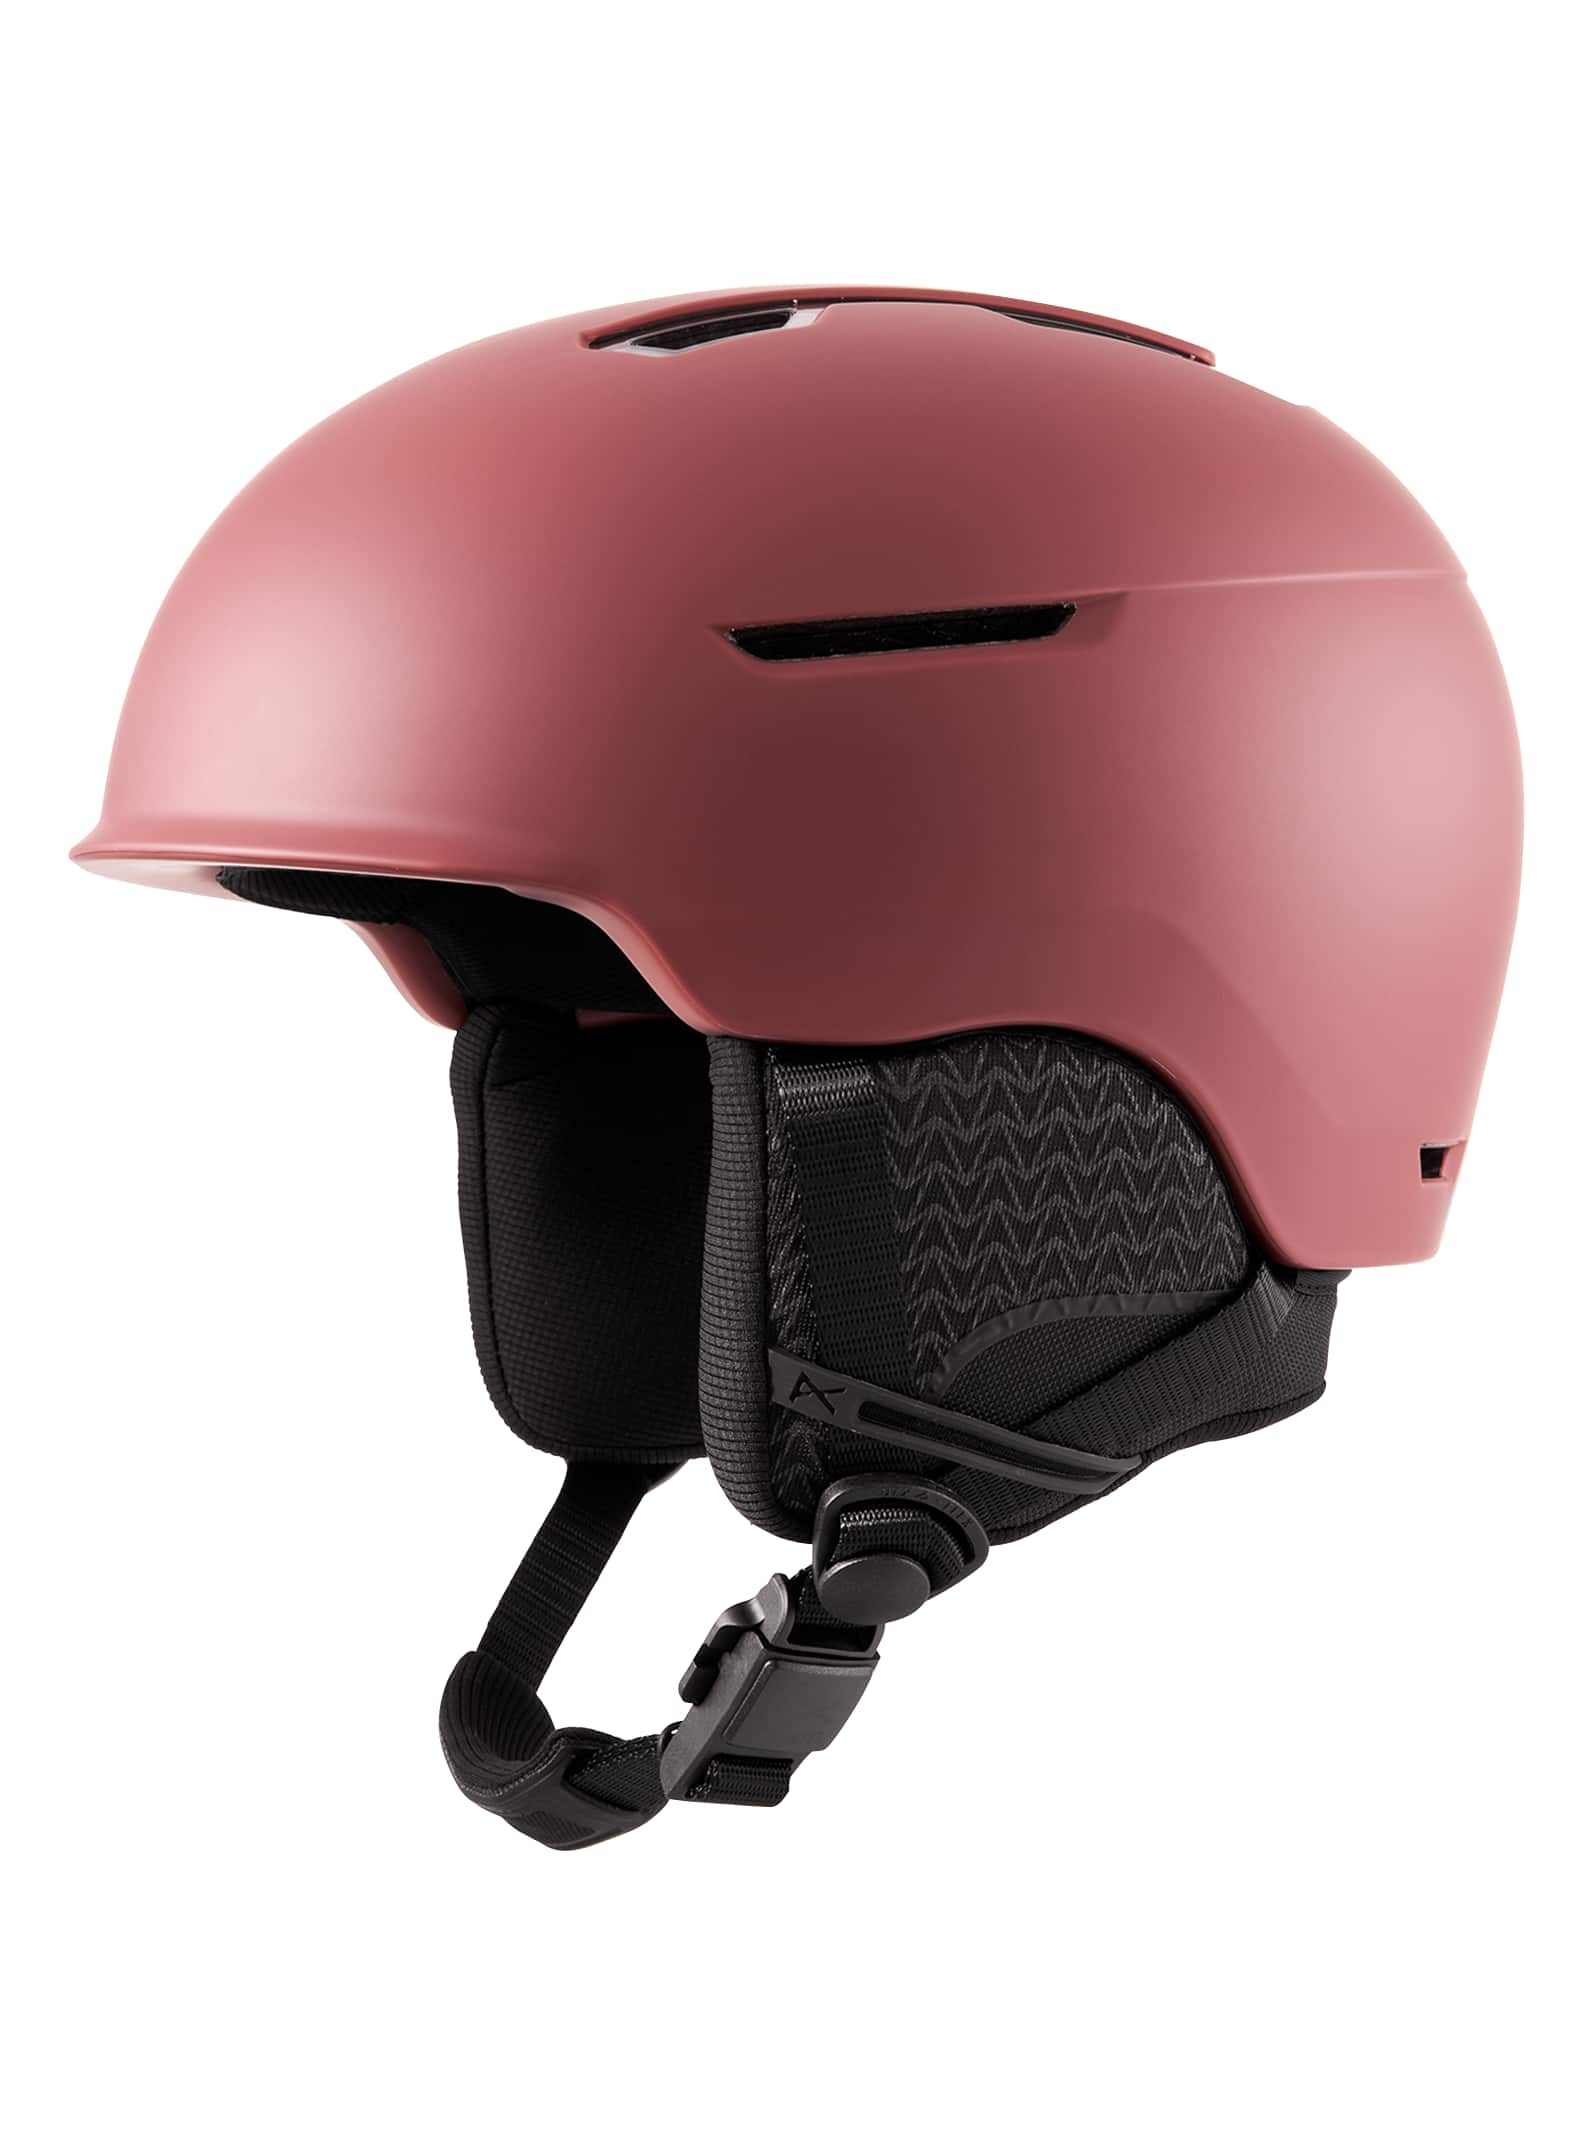 burton red snowboard helmet